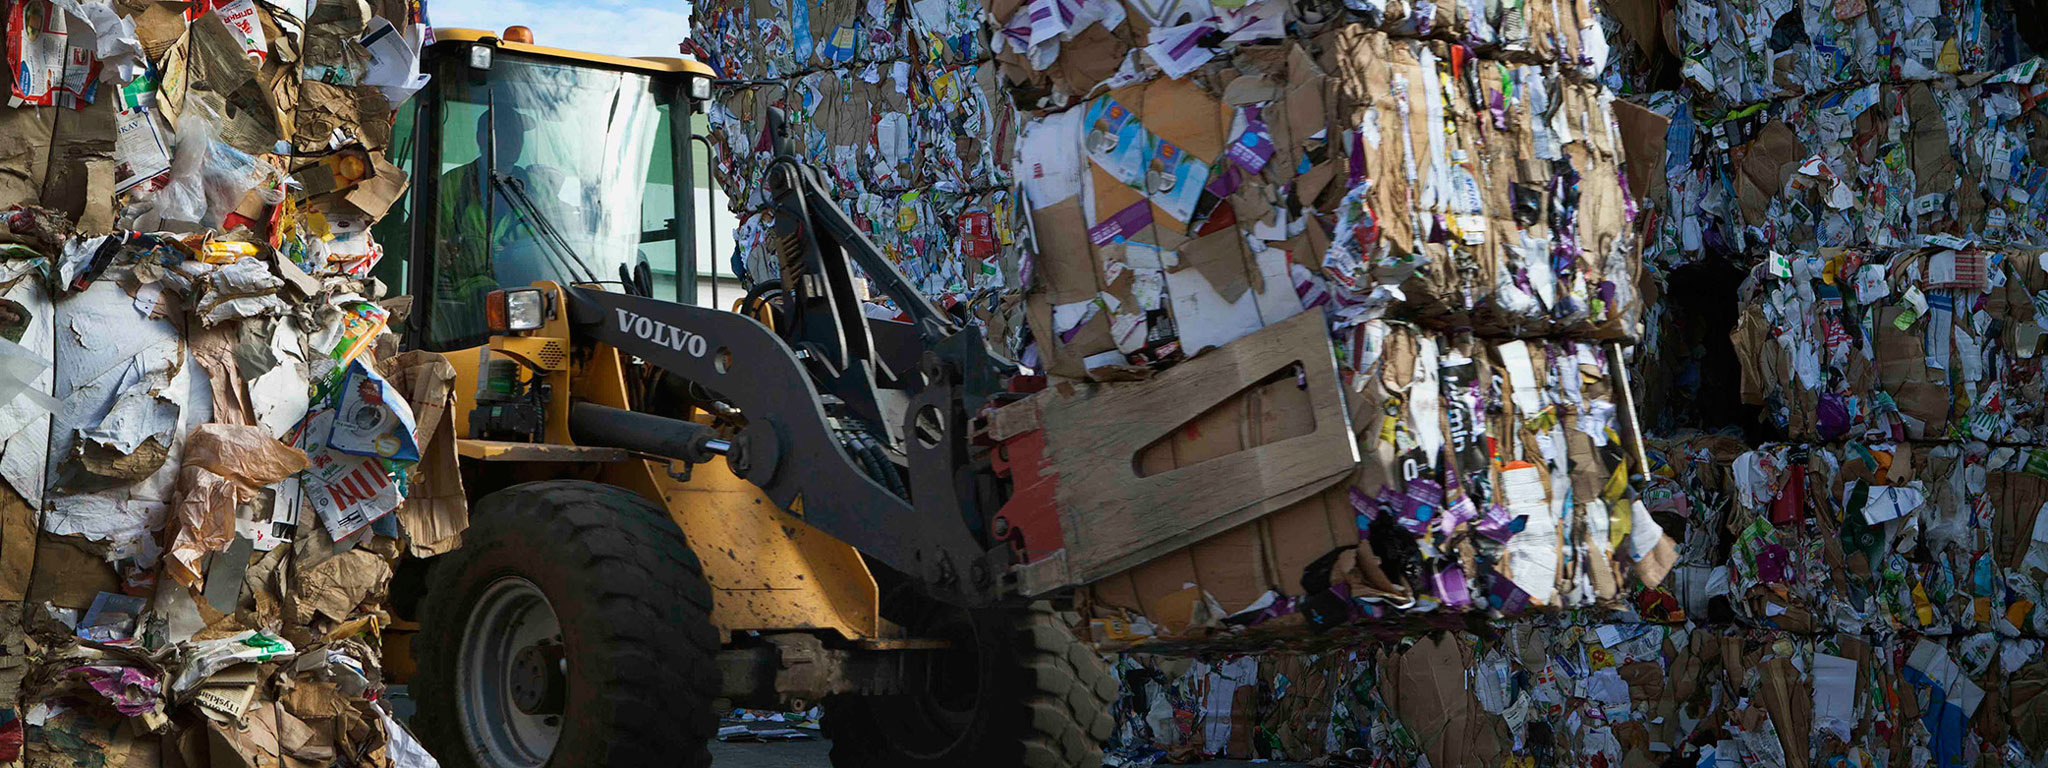 Cuộc cách mạng tái chế và tình trạng thiếu rác trầm trọng tại Thụy Điển